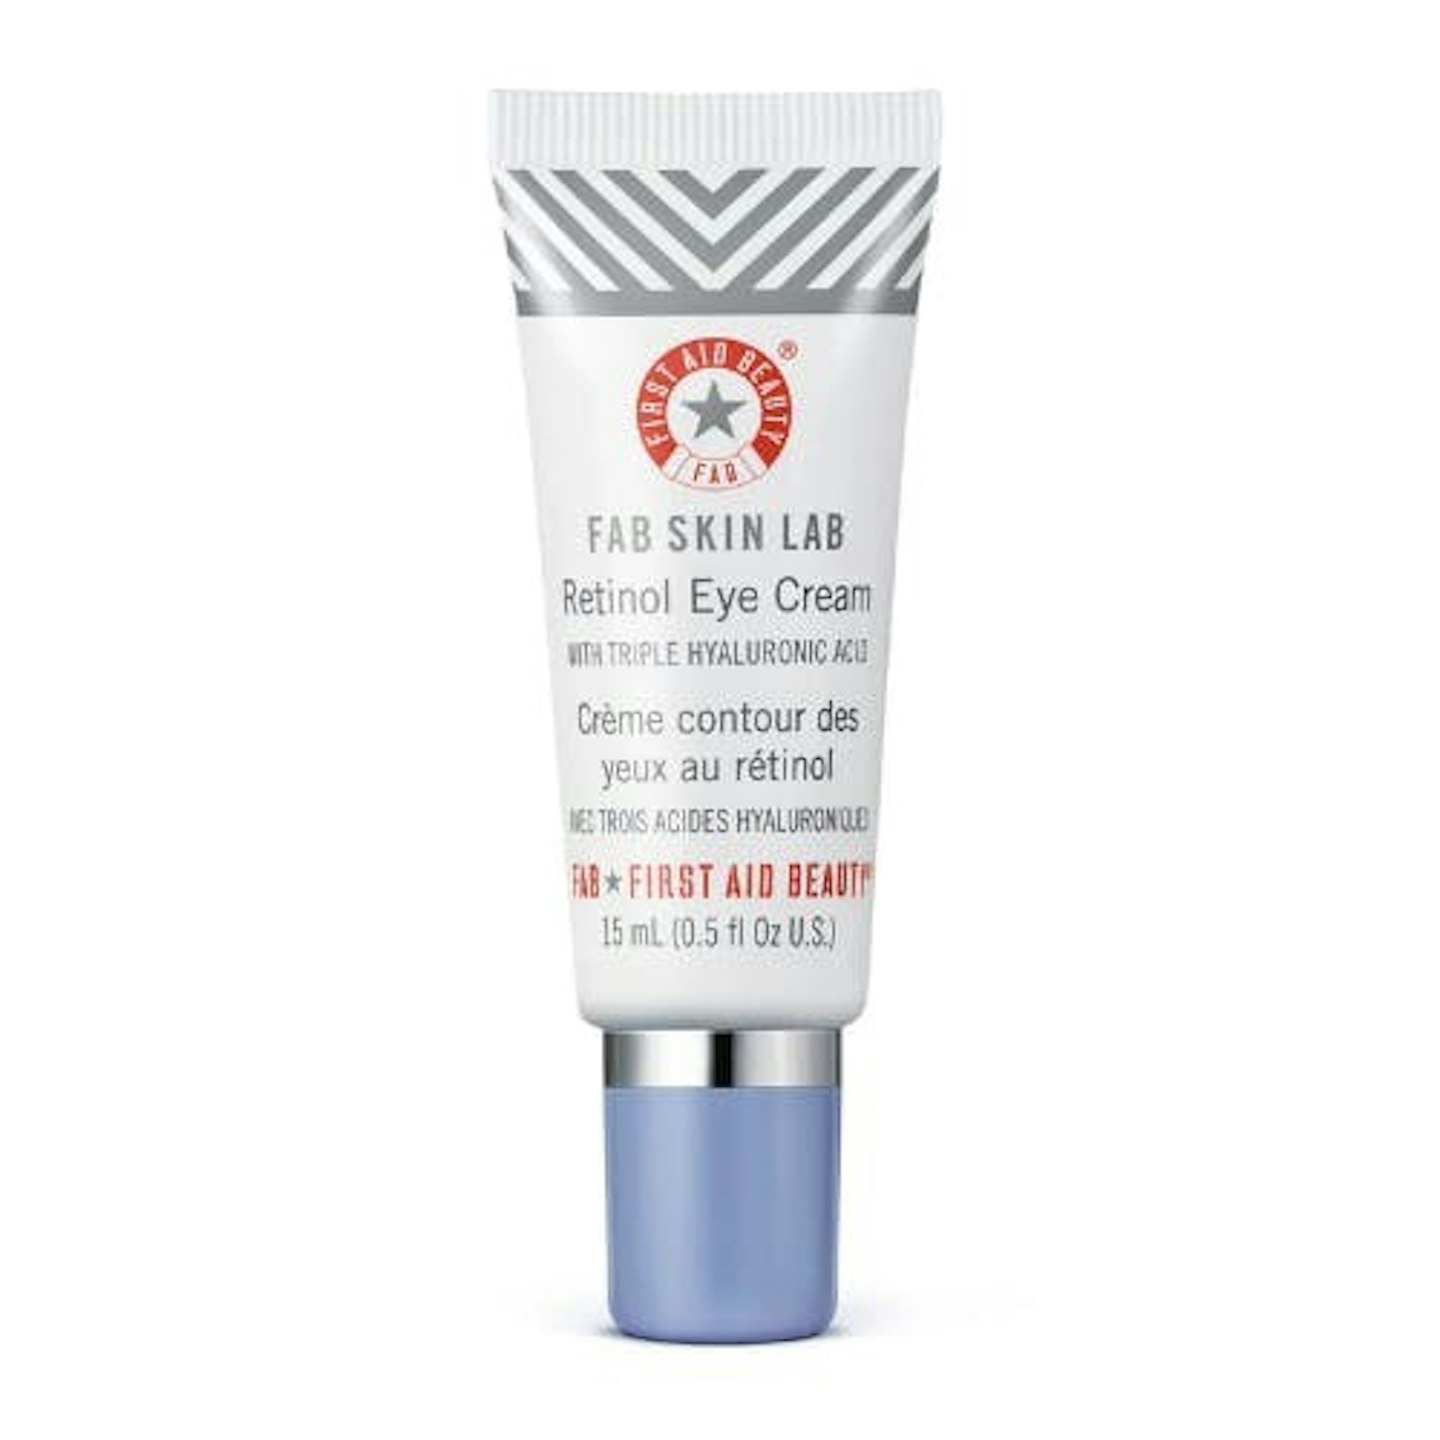 First Aid Beauty FAB Skin Lab Retinol Eye Cream with Triple Hyaluronic Acid, 15ml